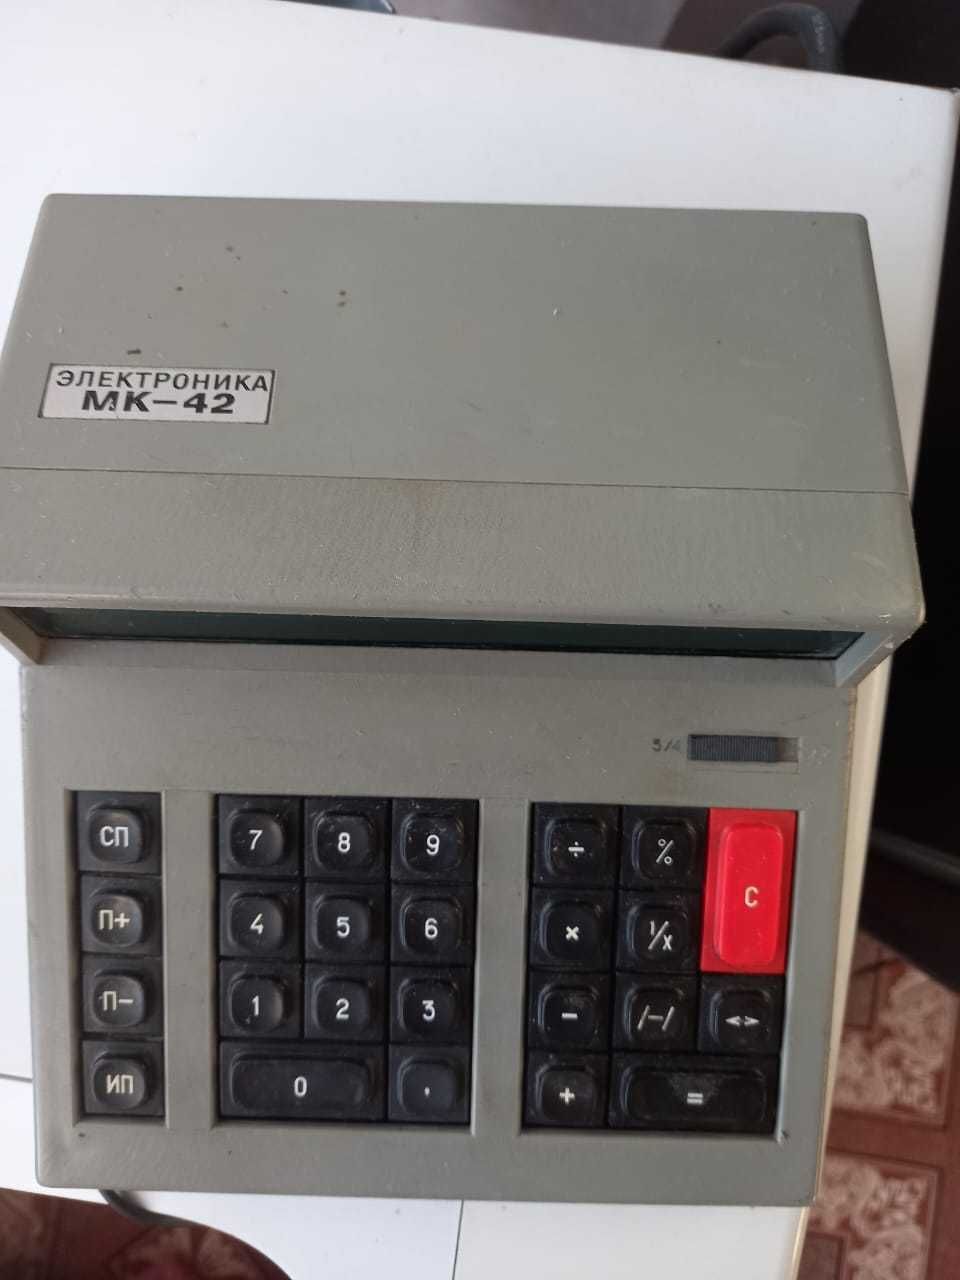 Калькулятор- "Электроника"  МК 42  СССР, цена 10 000 тыс. тенге